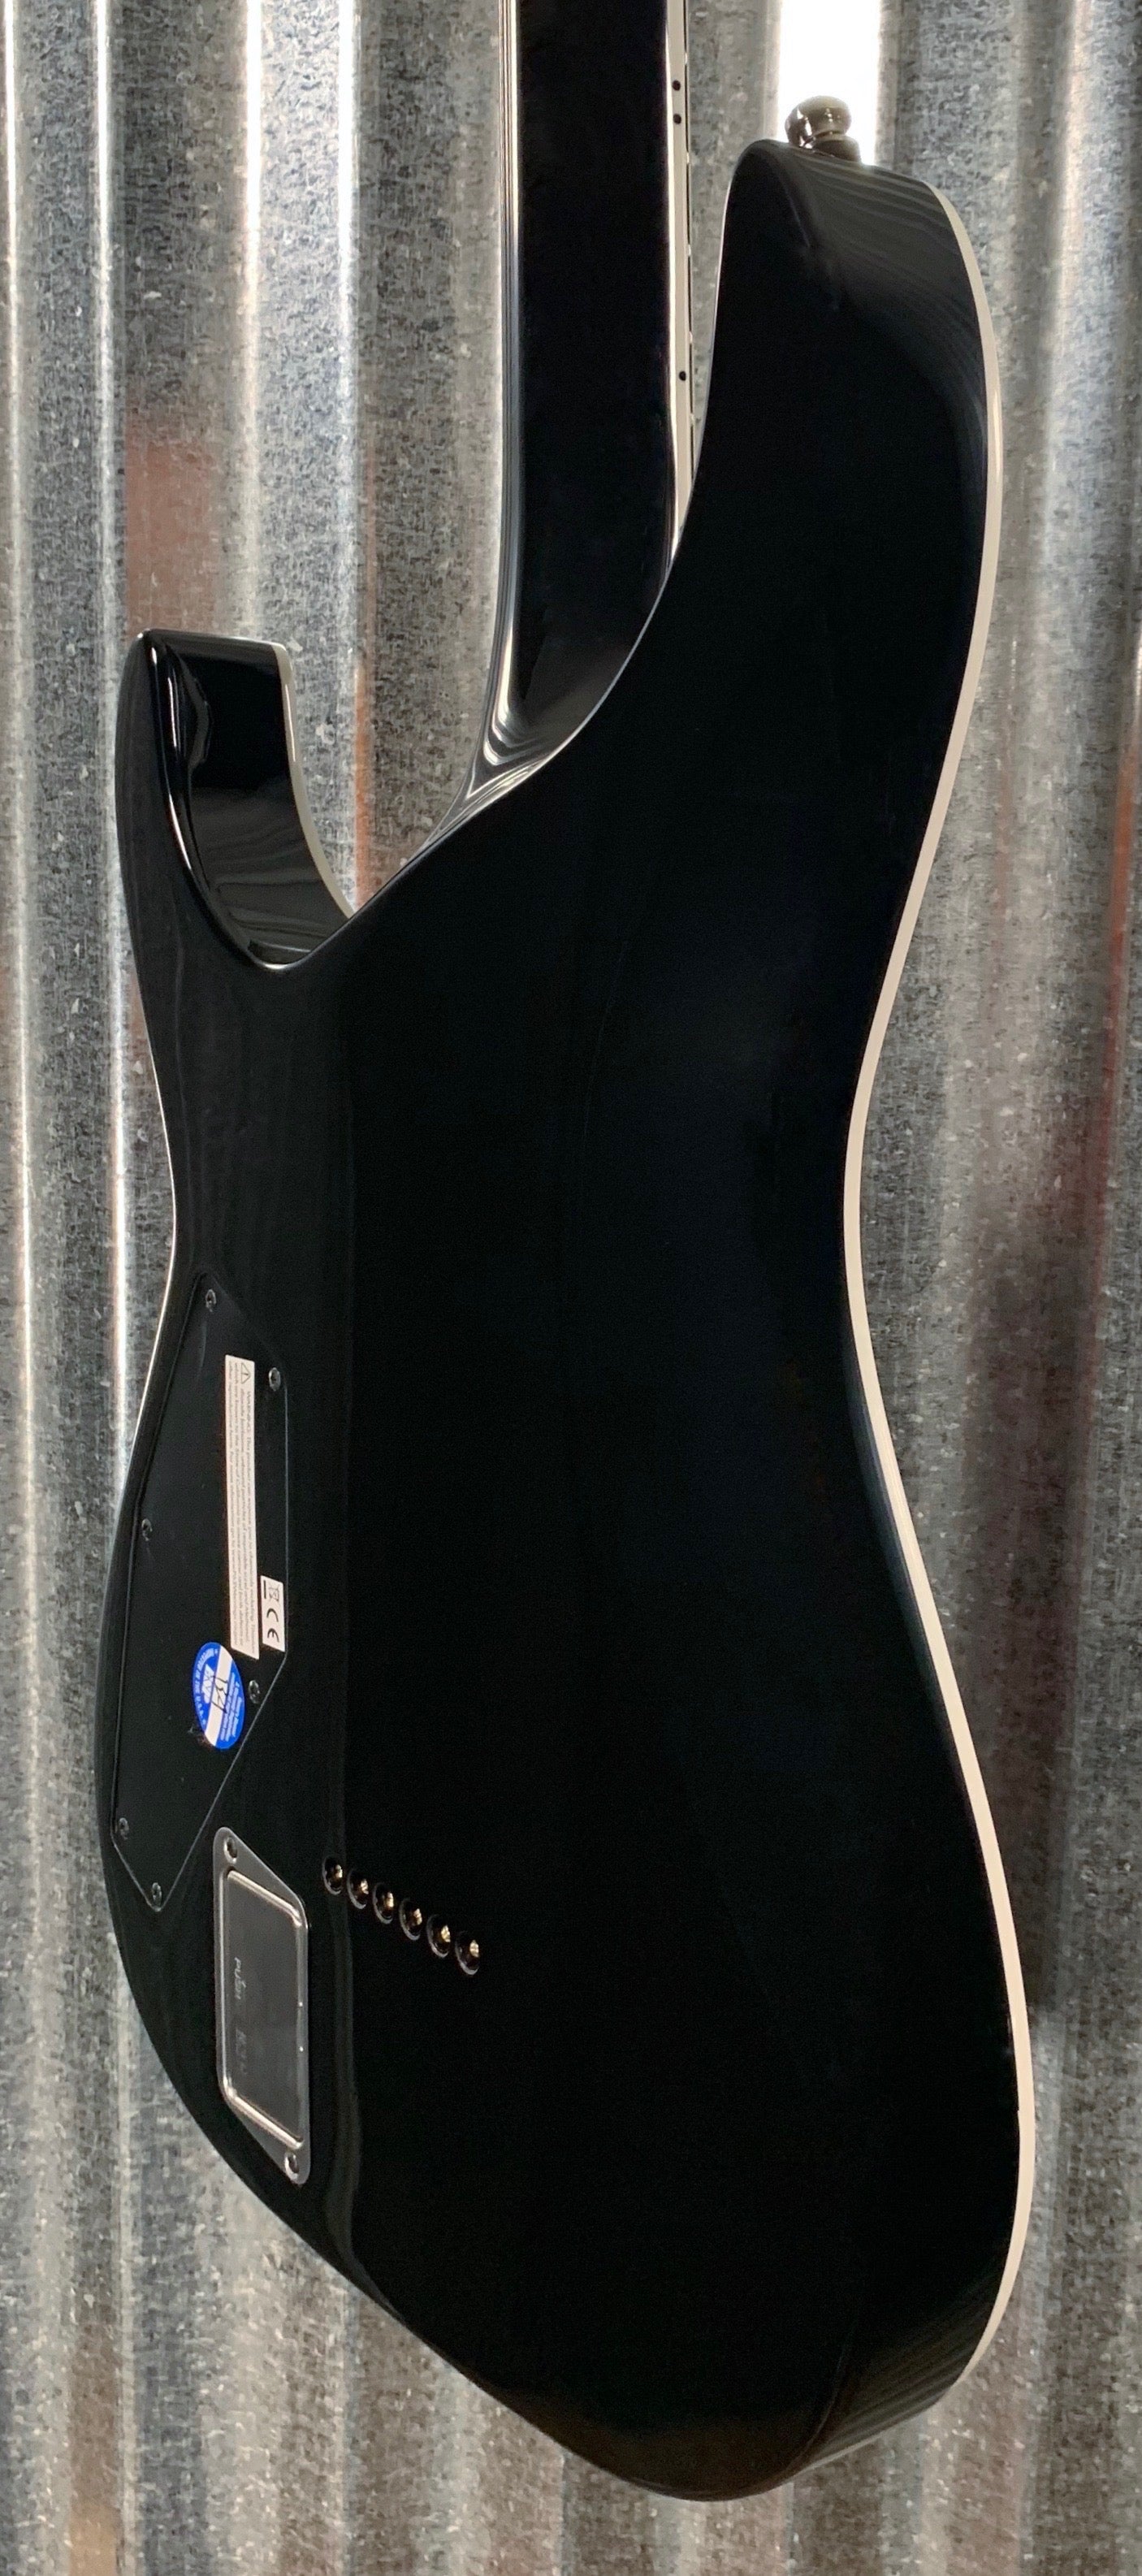 ESP E-II Horizon NT-II Tiger Eye Amber Fade EMG Guitar & Case EIIHORNTIITEAFD #1193